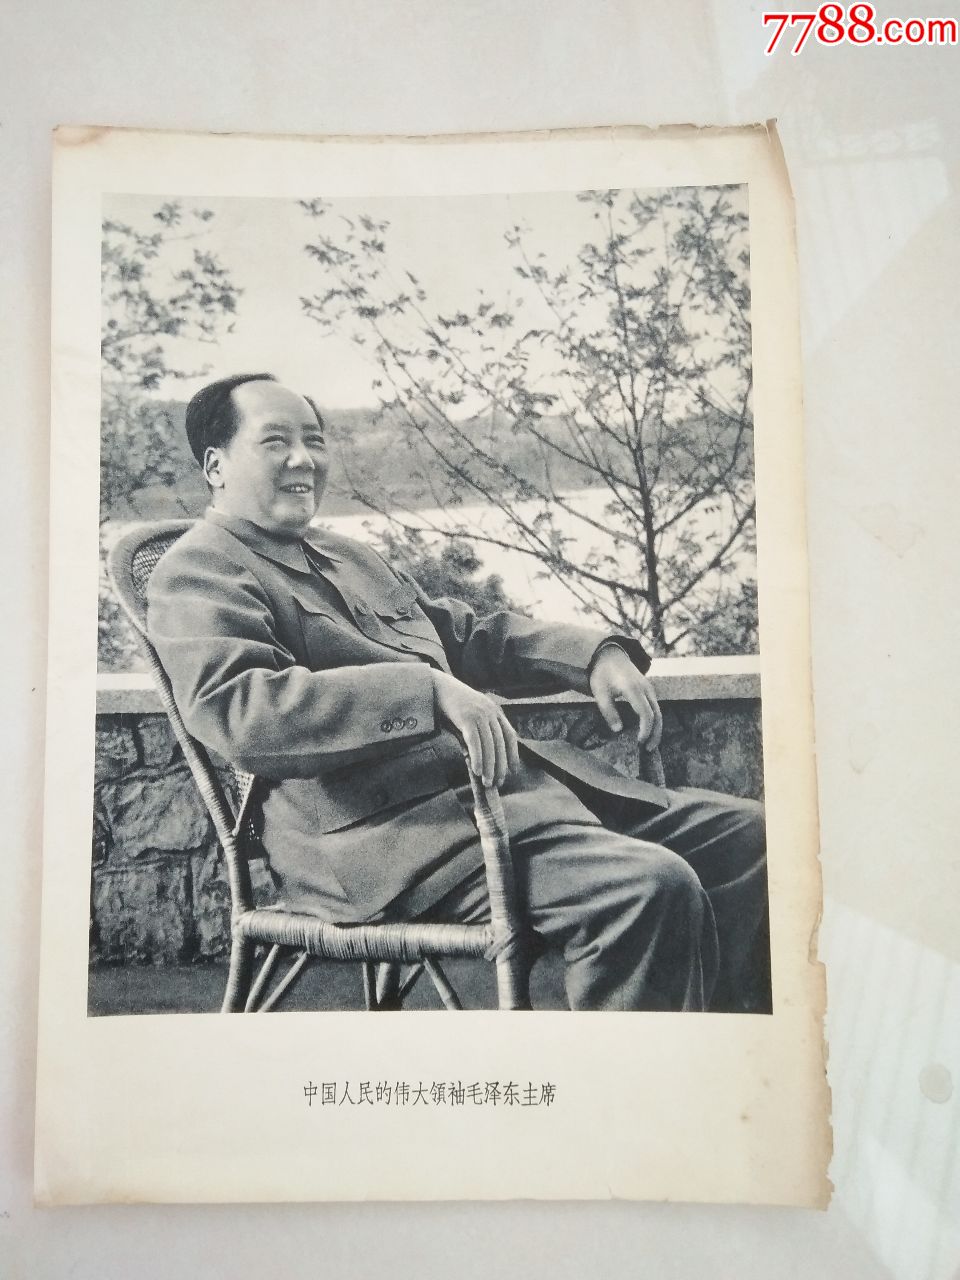 16开画册散页-中国人的伟大领袖毛主席